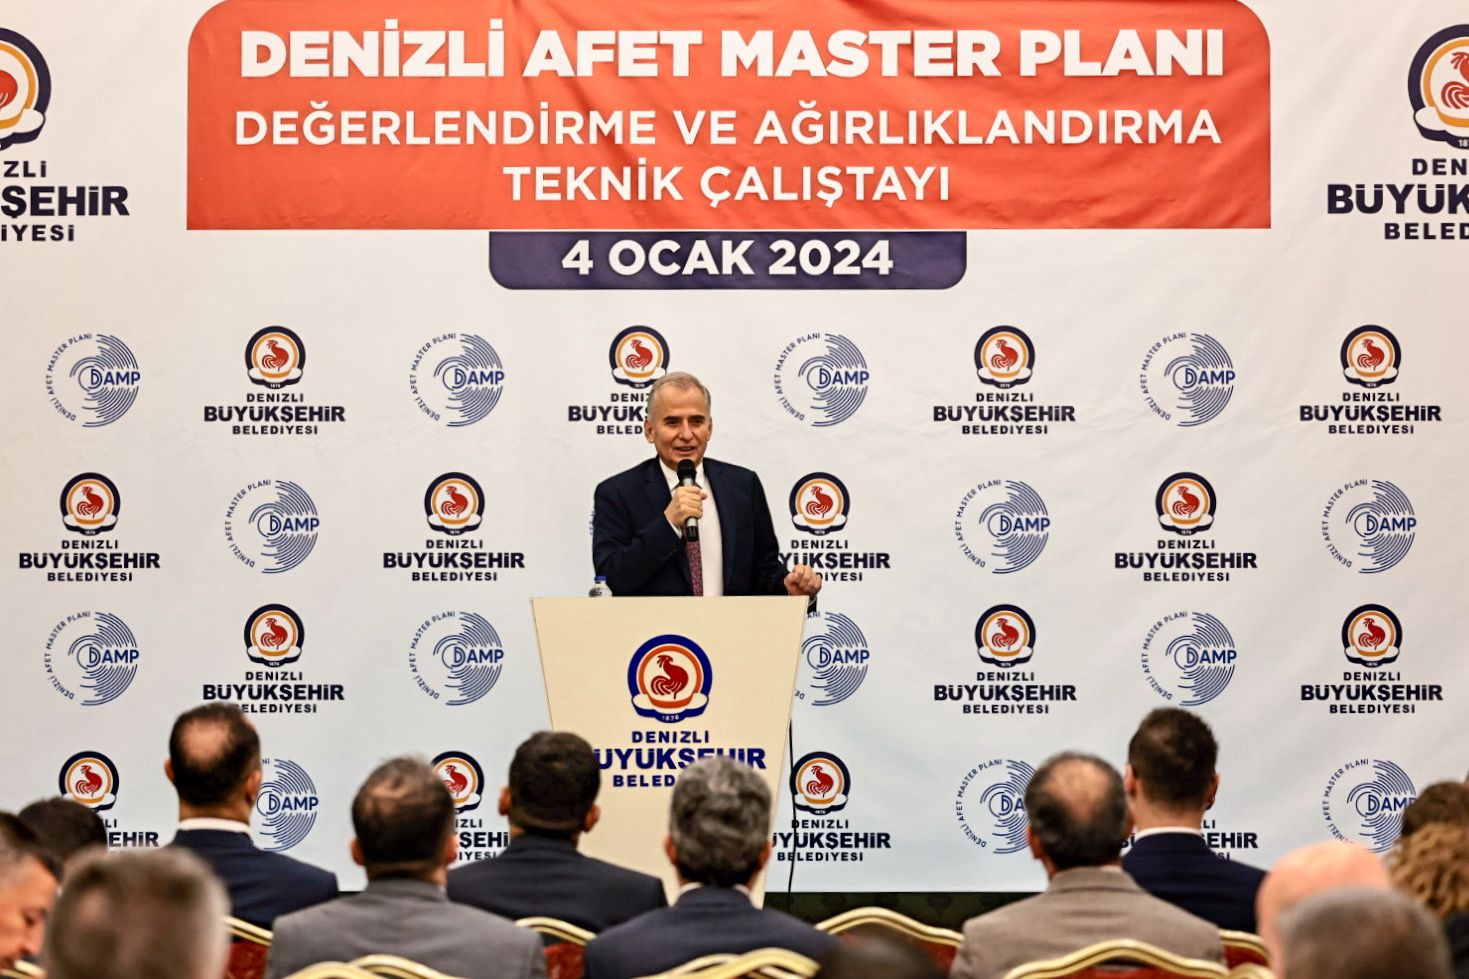 Türkiye’nin ilk afet master planında sona doğru (7) - Kopya